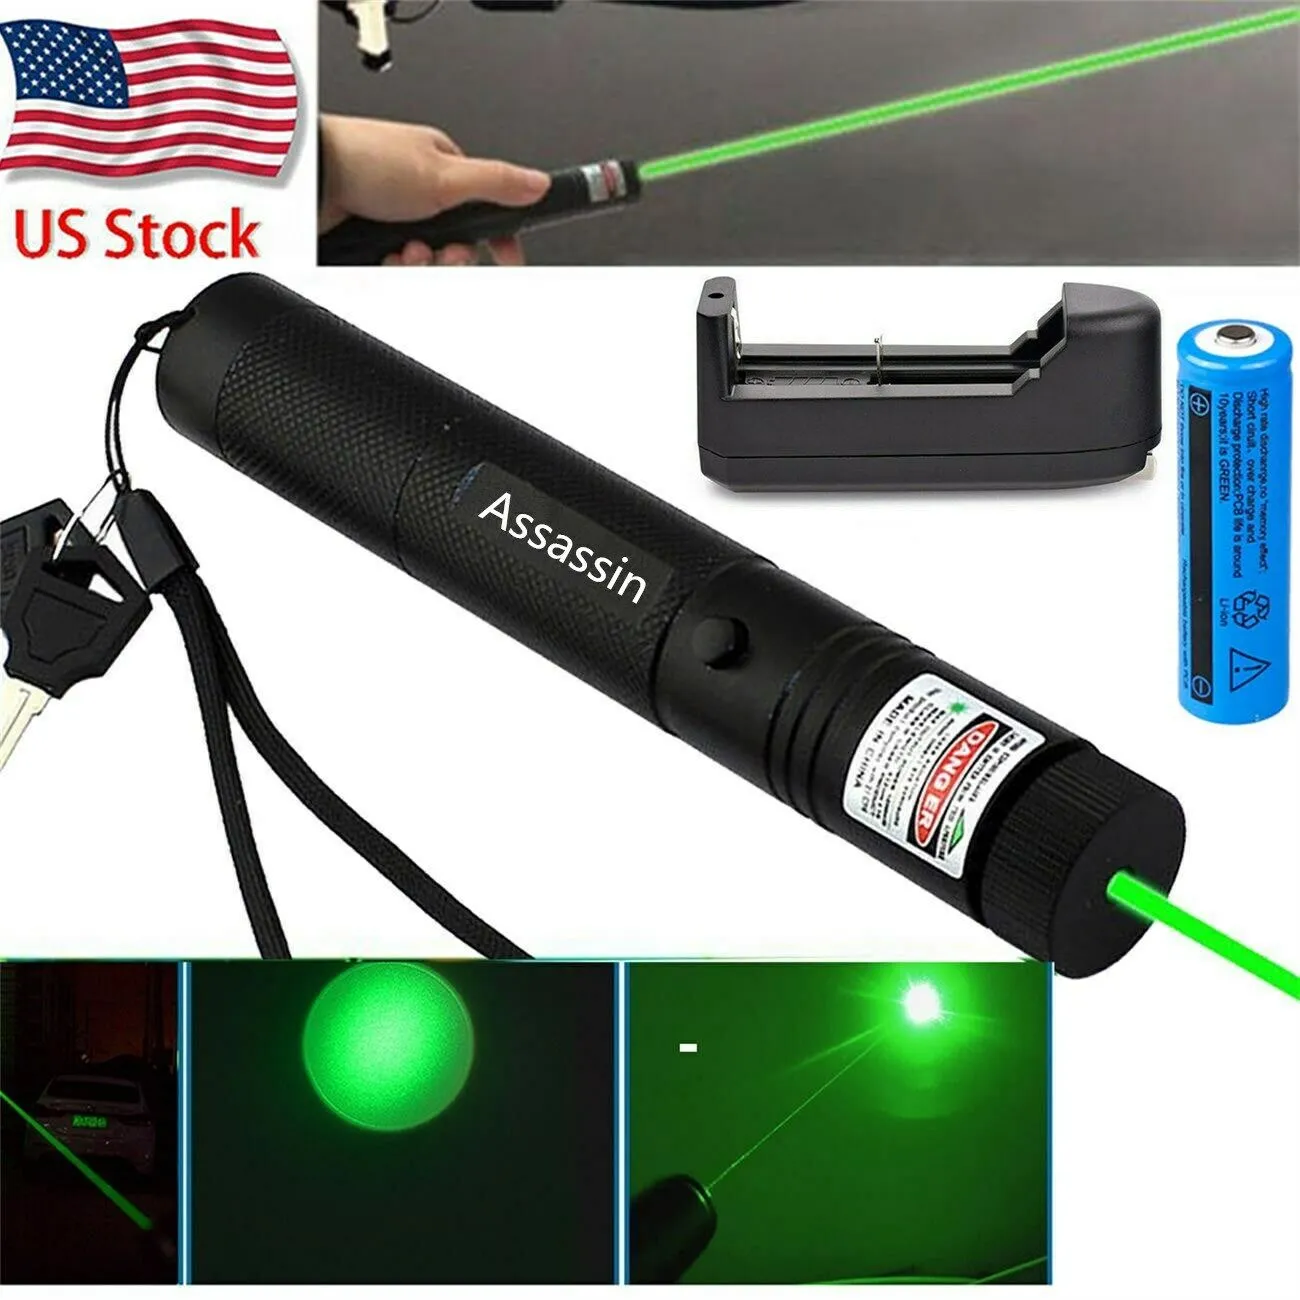 Astronomie Onderwijs Focus Burning Krachtige Groene Laser Pen Pointer 1 MW 532nm Zichtbare Straal Kat Speelgoed Militaire Groene Laser + 18650 Batterij + Oplader